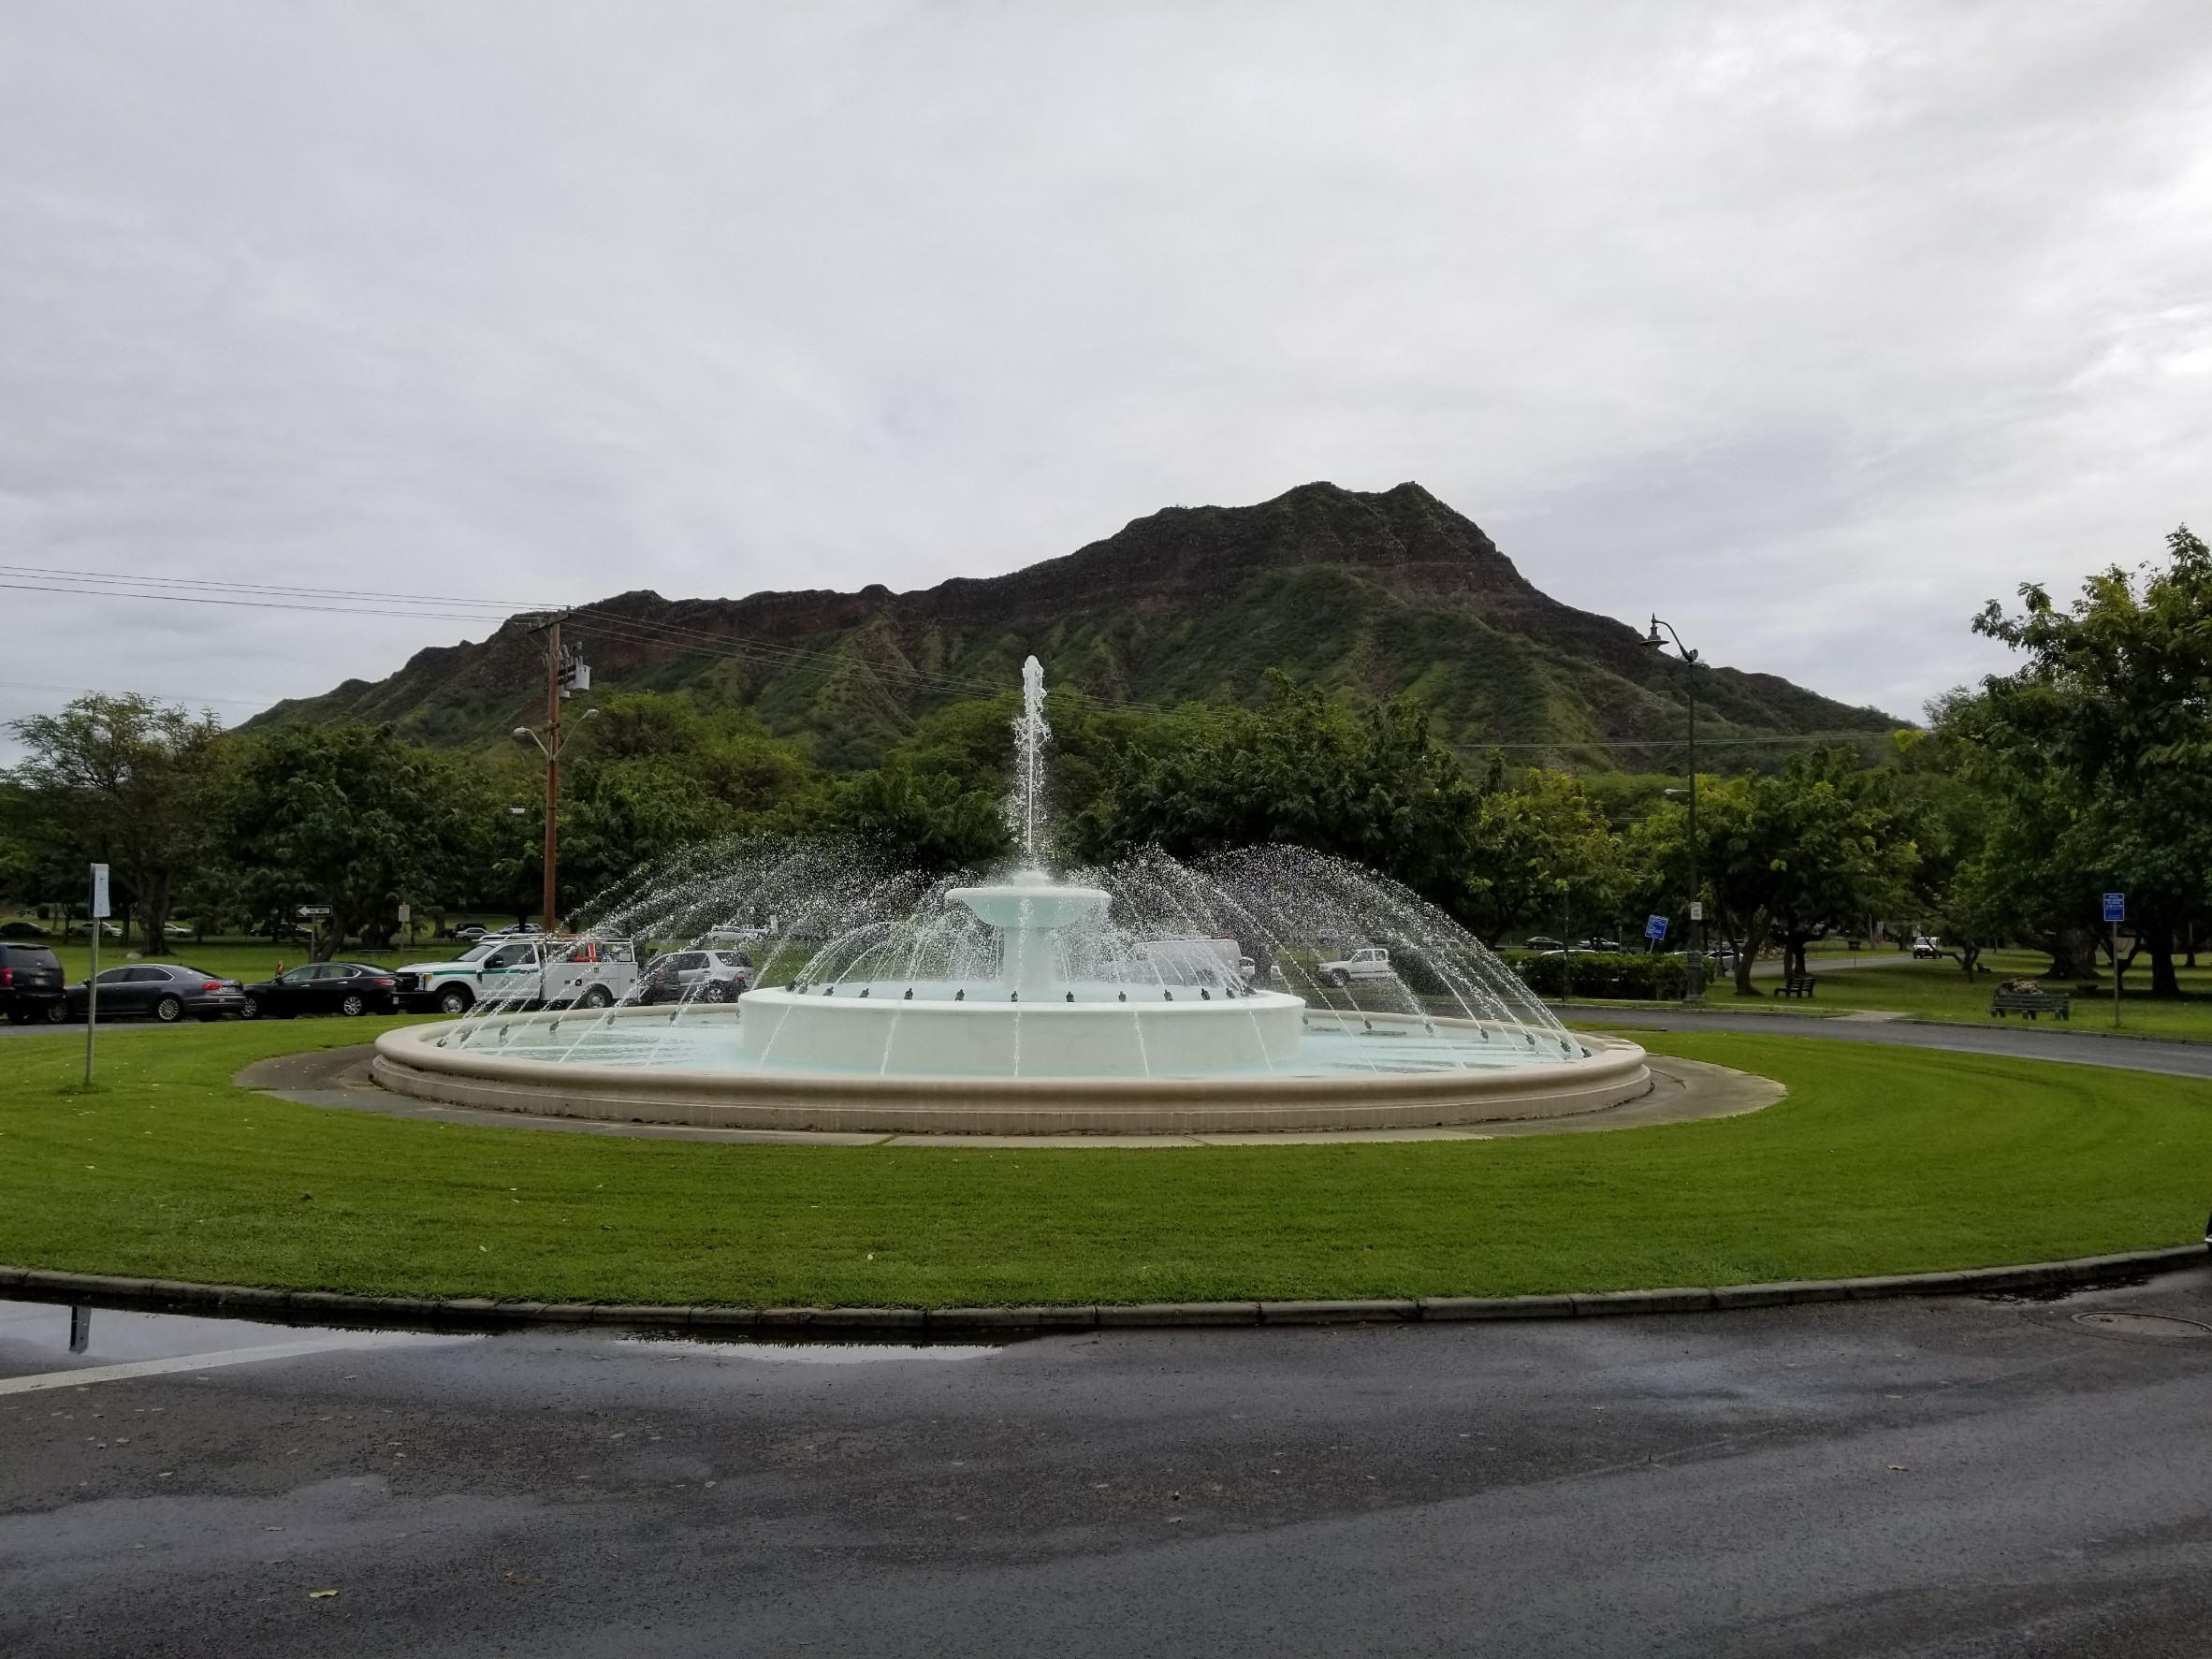 カピオラニ公園に設置噴水。鳳凰を戴いてるので「鳳凰噴水塔」と呼ばれている